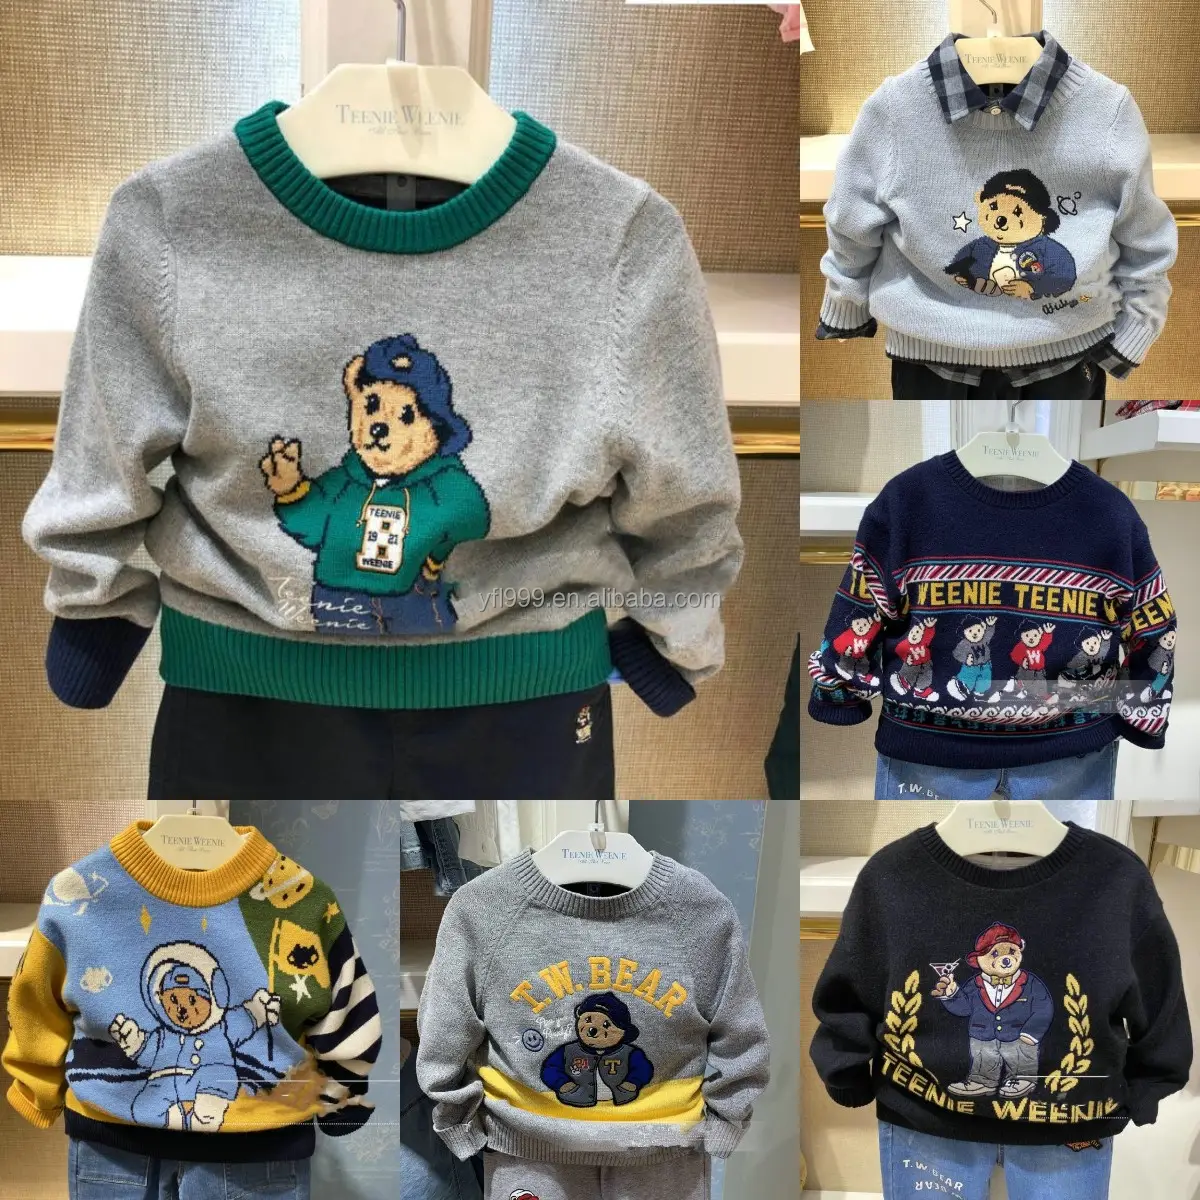 2023 봄 새로운 아동복 패션 팬 어린이 카디건 한국어 버전 스웨터